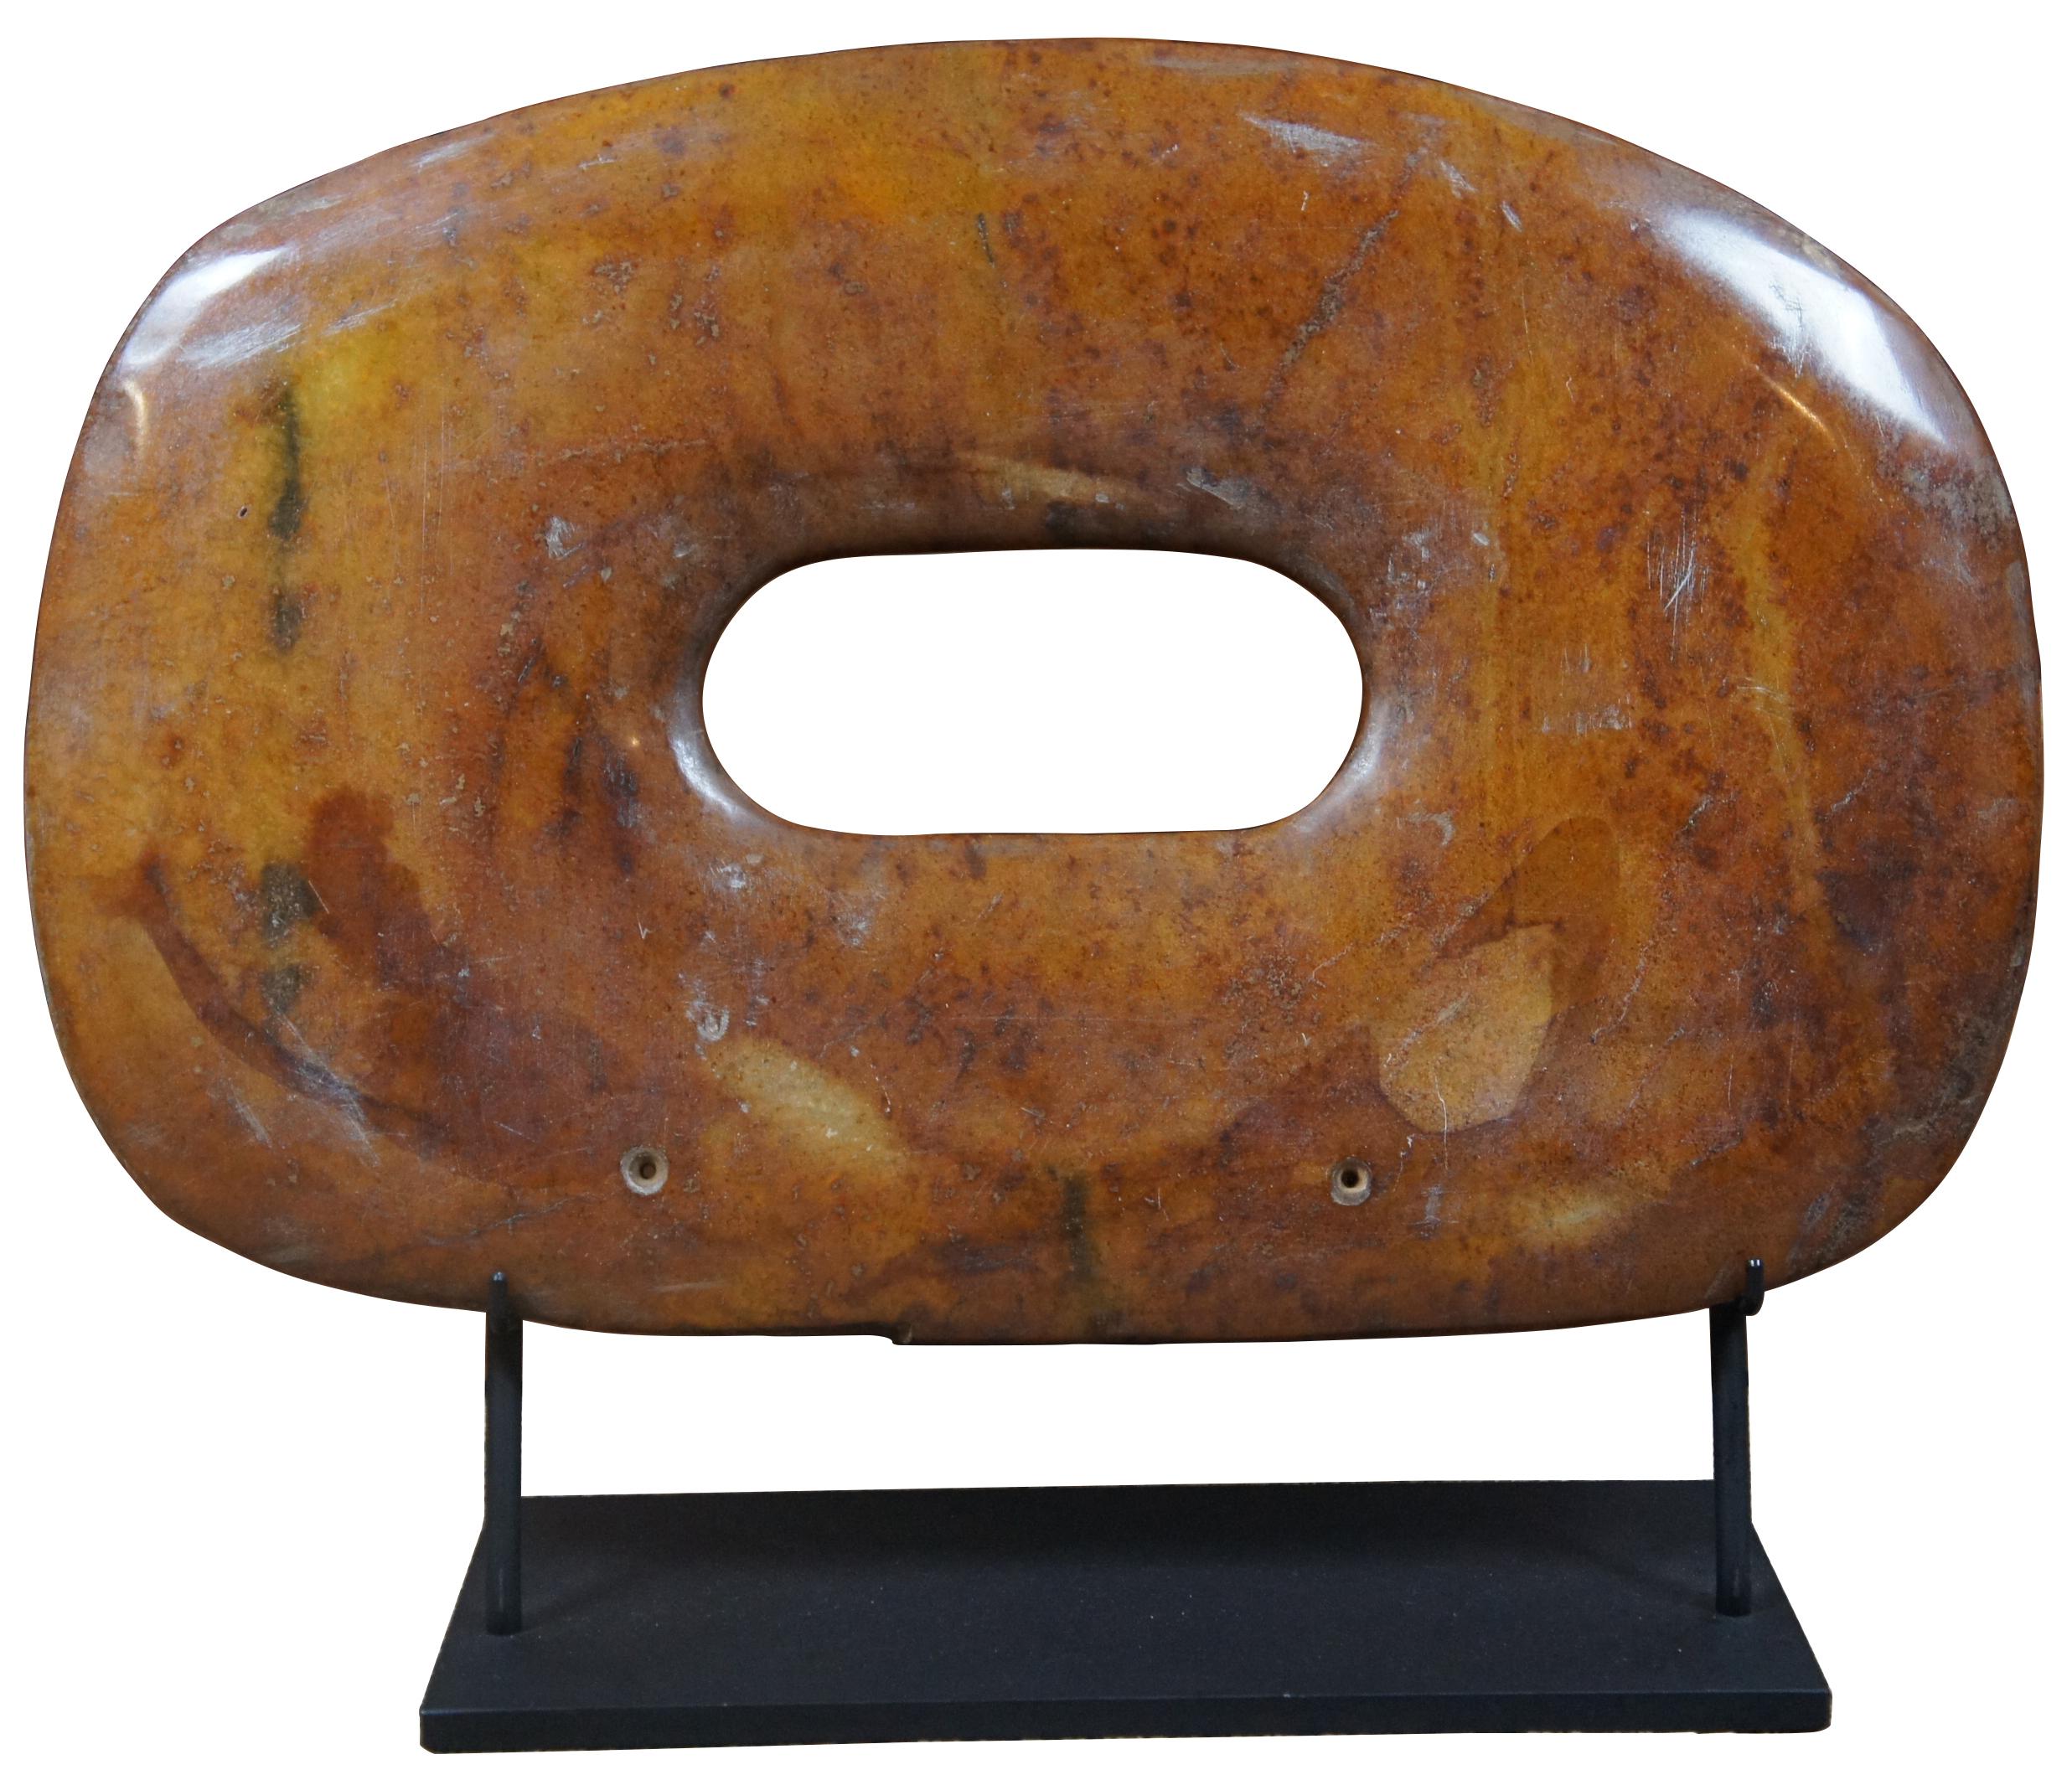 Paire de bi-disques en pierre sculptée orange/brune. Le disque bi ou pi est un disque plat avec un trou circulaire au centre. Les disques remontent à l'époque néolithique (5 000-2 000 ans avant J.-C.). Les archéologues supposent que la forme ronde